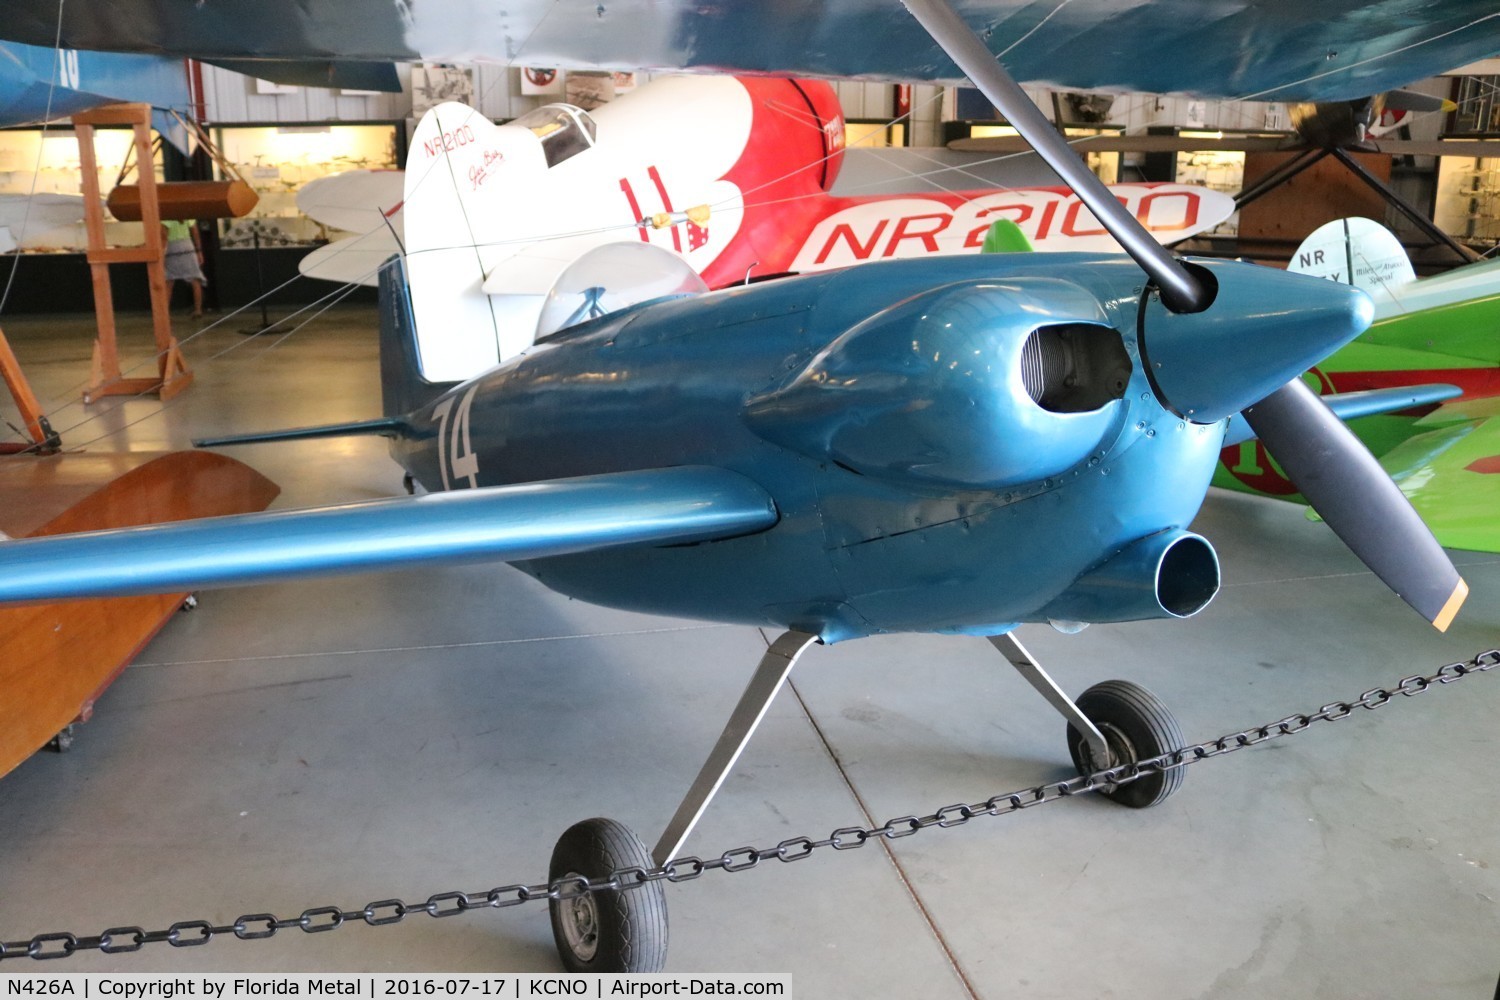 N426A, 1950 Orlowski Henri H O 1 C/N 1, Planes of Fame